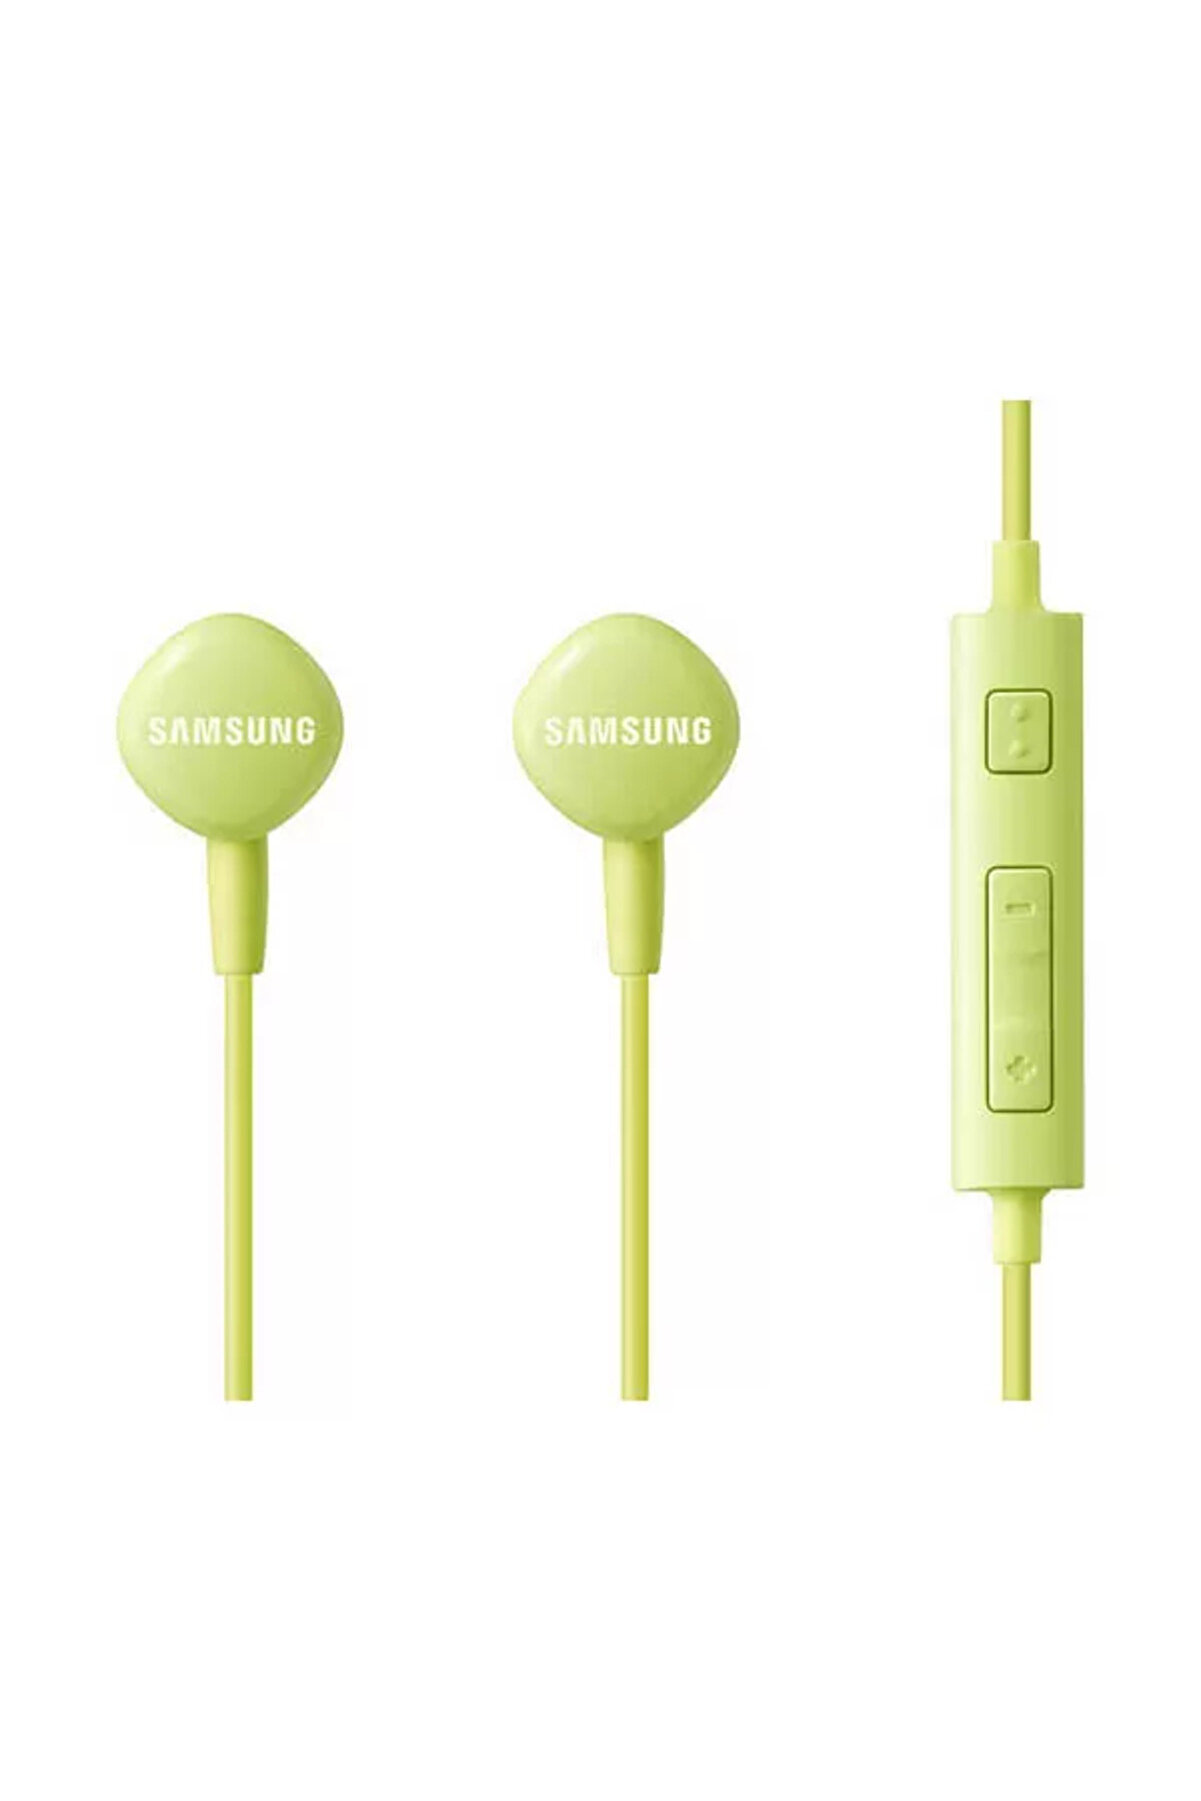 Samsung Hs13 Mikrofonlu Kulak Içi Kulaklık eohs1303gegww,yeşil